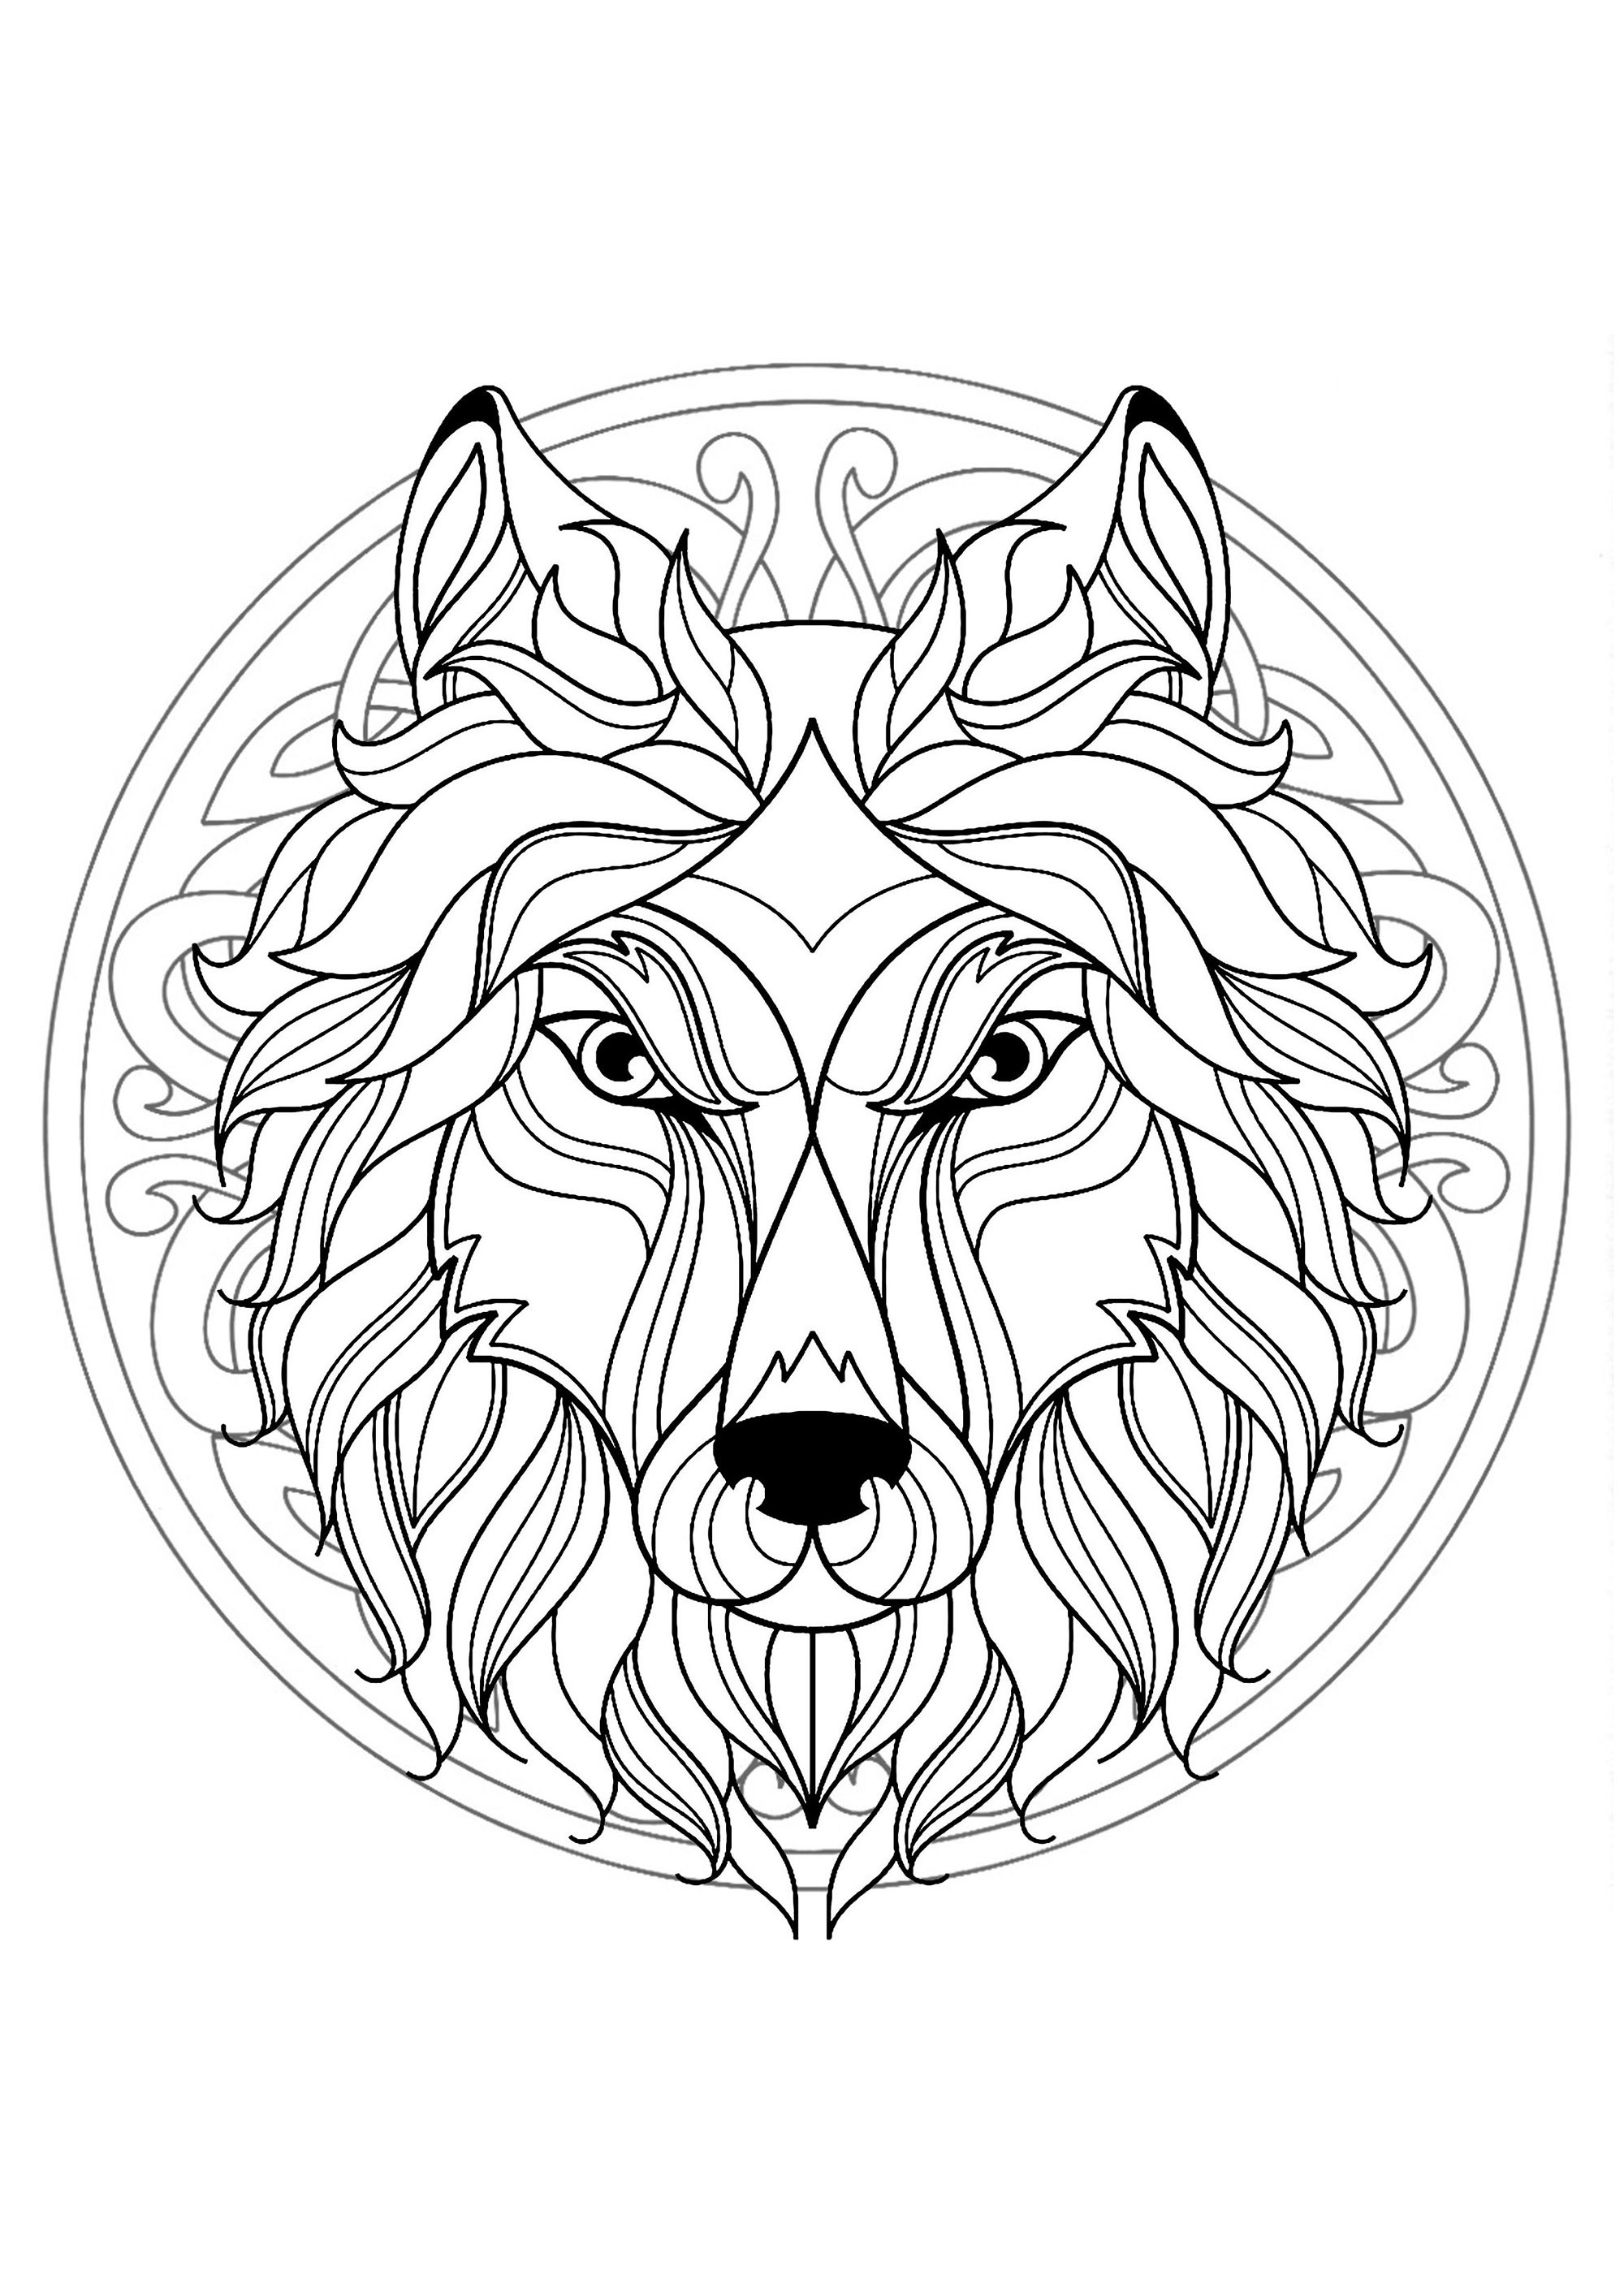 Mandala zum Ausmalen mit Wolfskopf und komplexen Mustern im Hintergrund